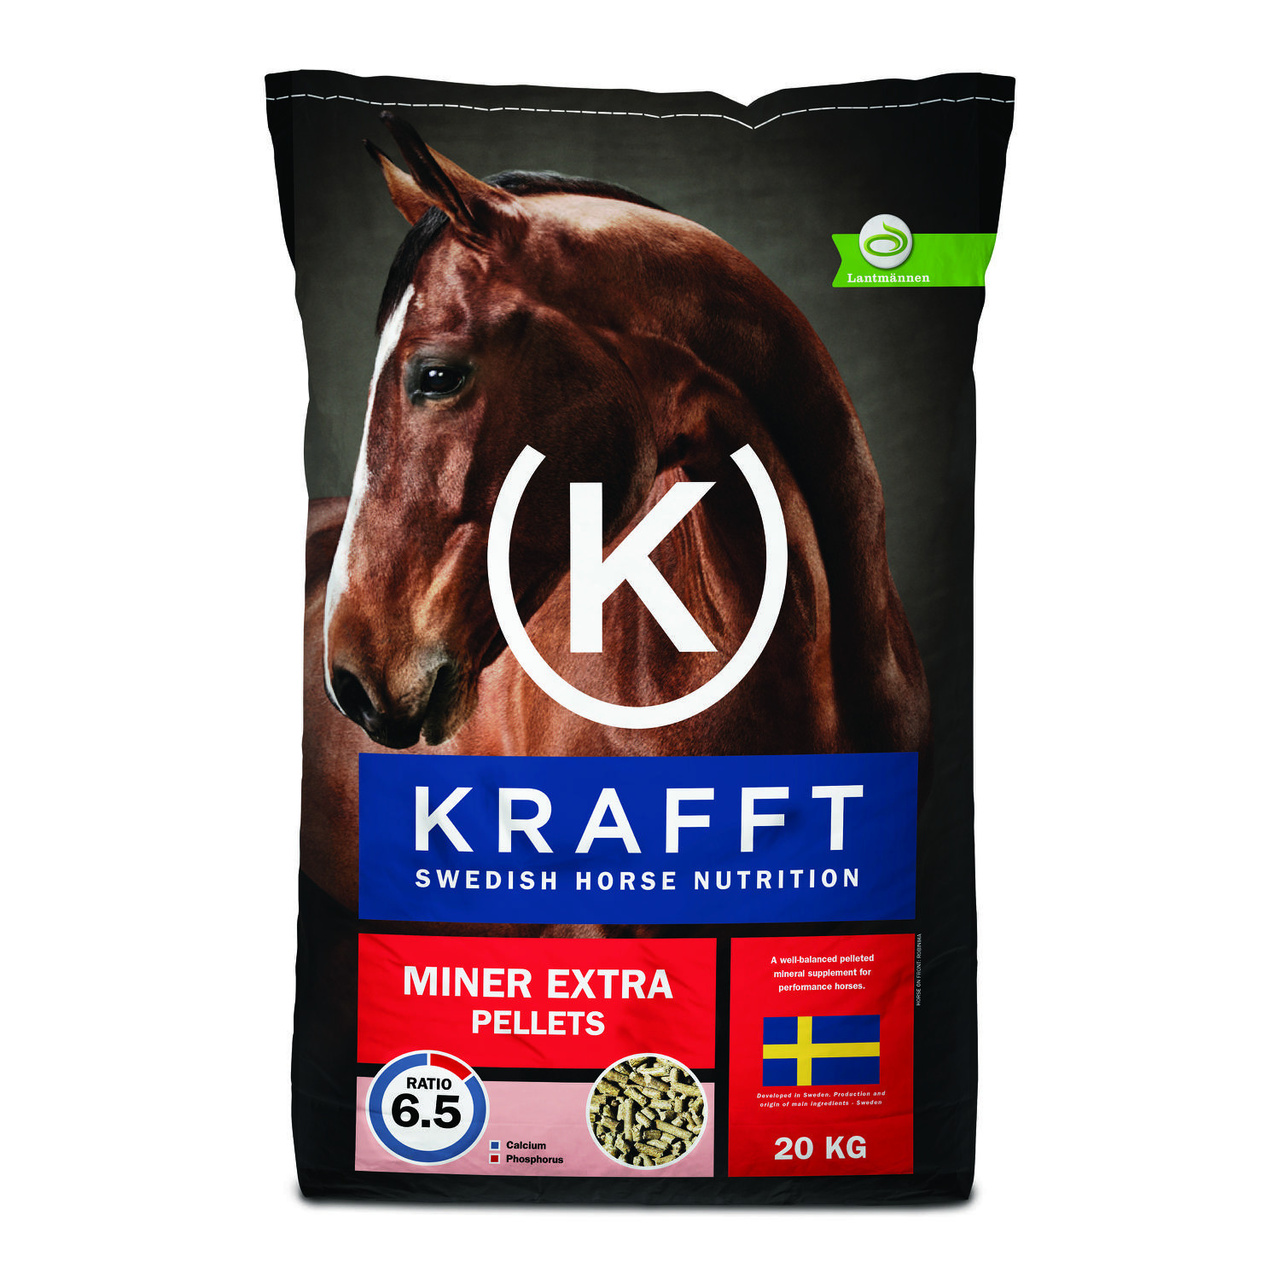 Krafft miner extra pellets 20kg